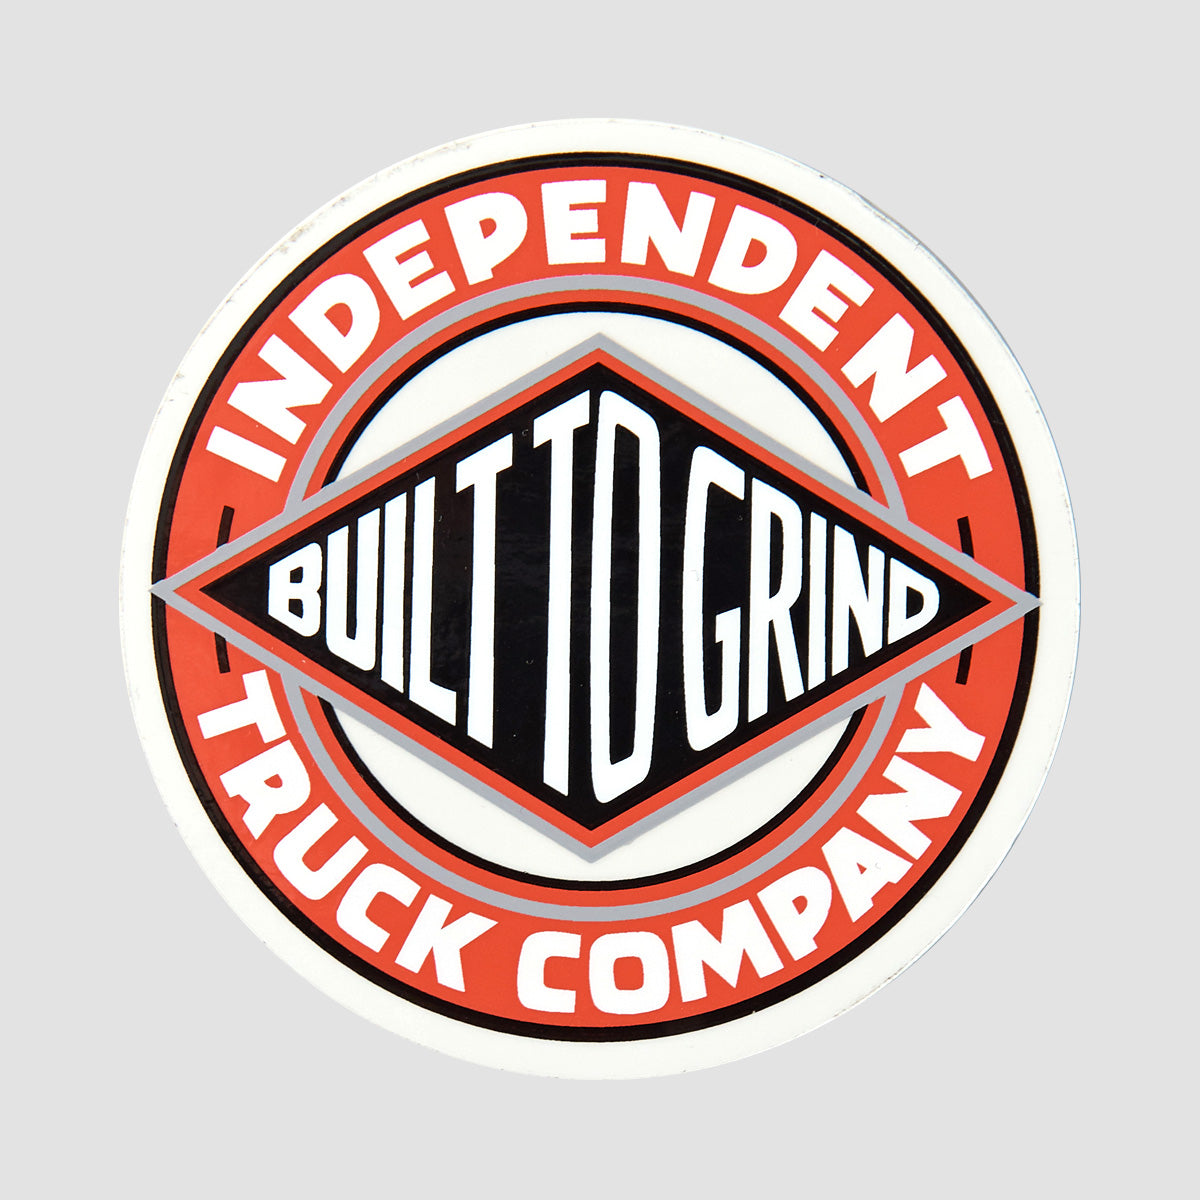 Independent BTG Summit Union Sicker Red/White 75mm